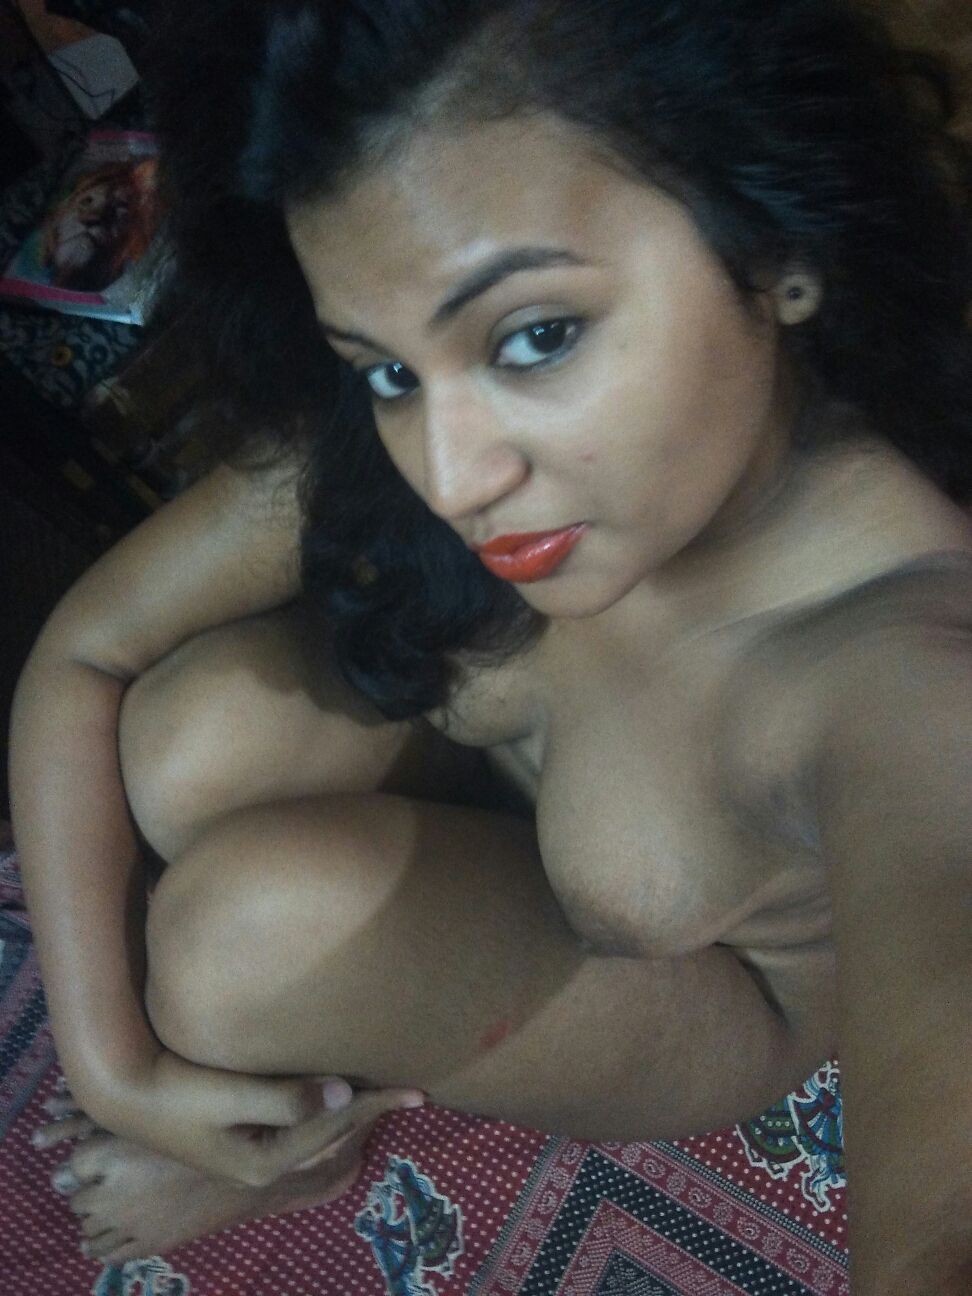 desi_girlfriend_nude_porn_indian_8519302038.jpg